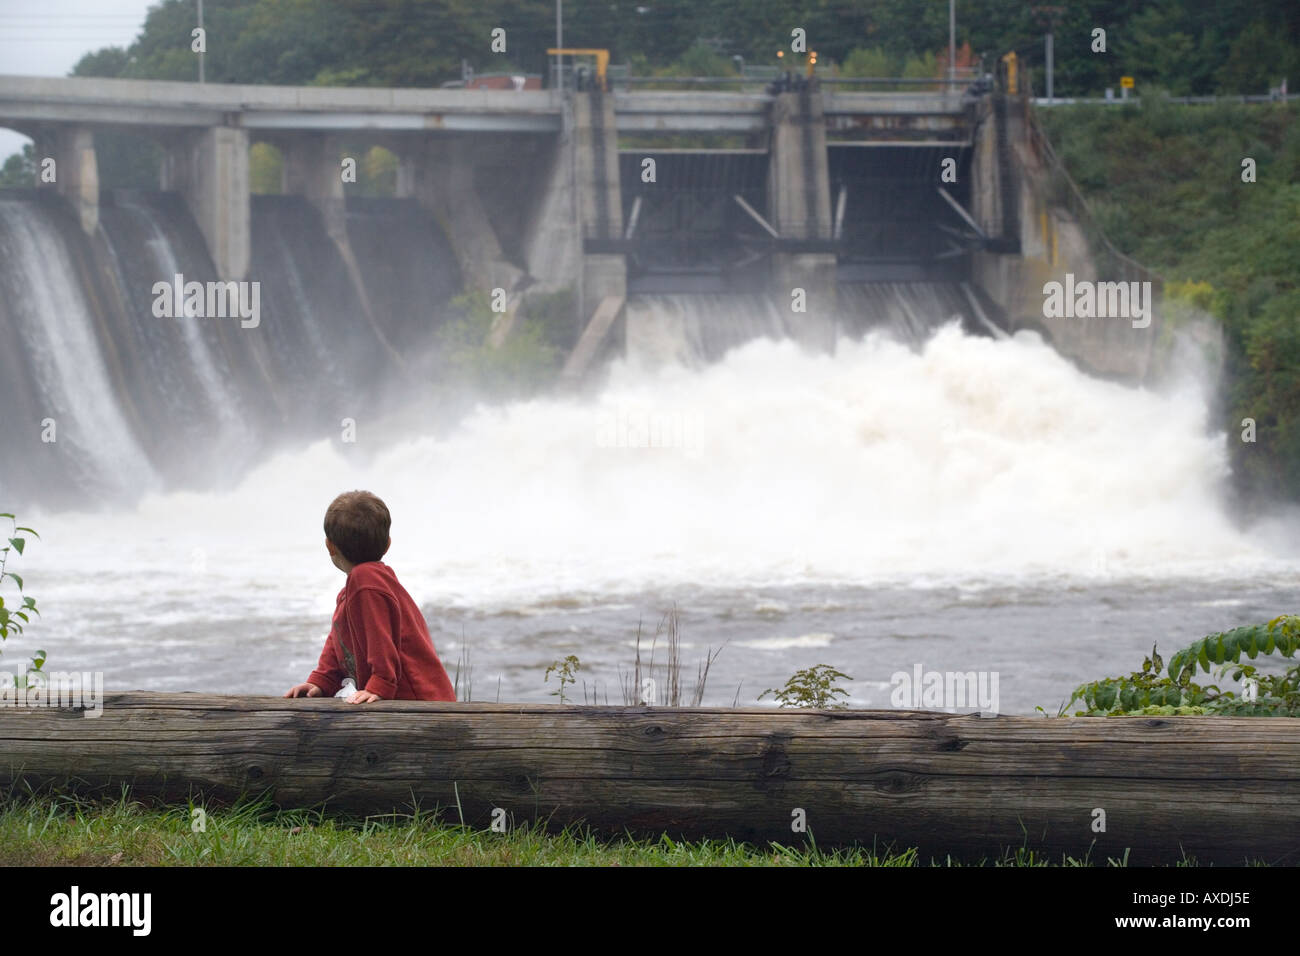 Stock Foto eines jungen, der gerade eines überfluteten Damms. Schwere Regenfälle verursacht massiven Überschwemmungen, öffnen dam Schleusen. Stockfoto